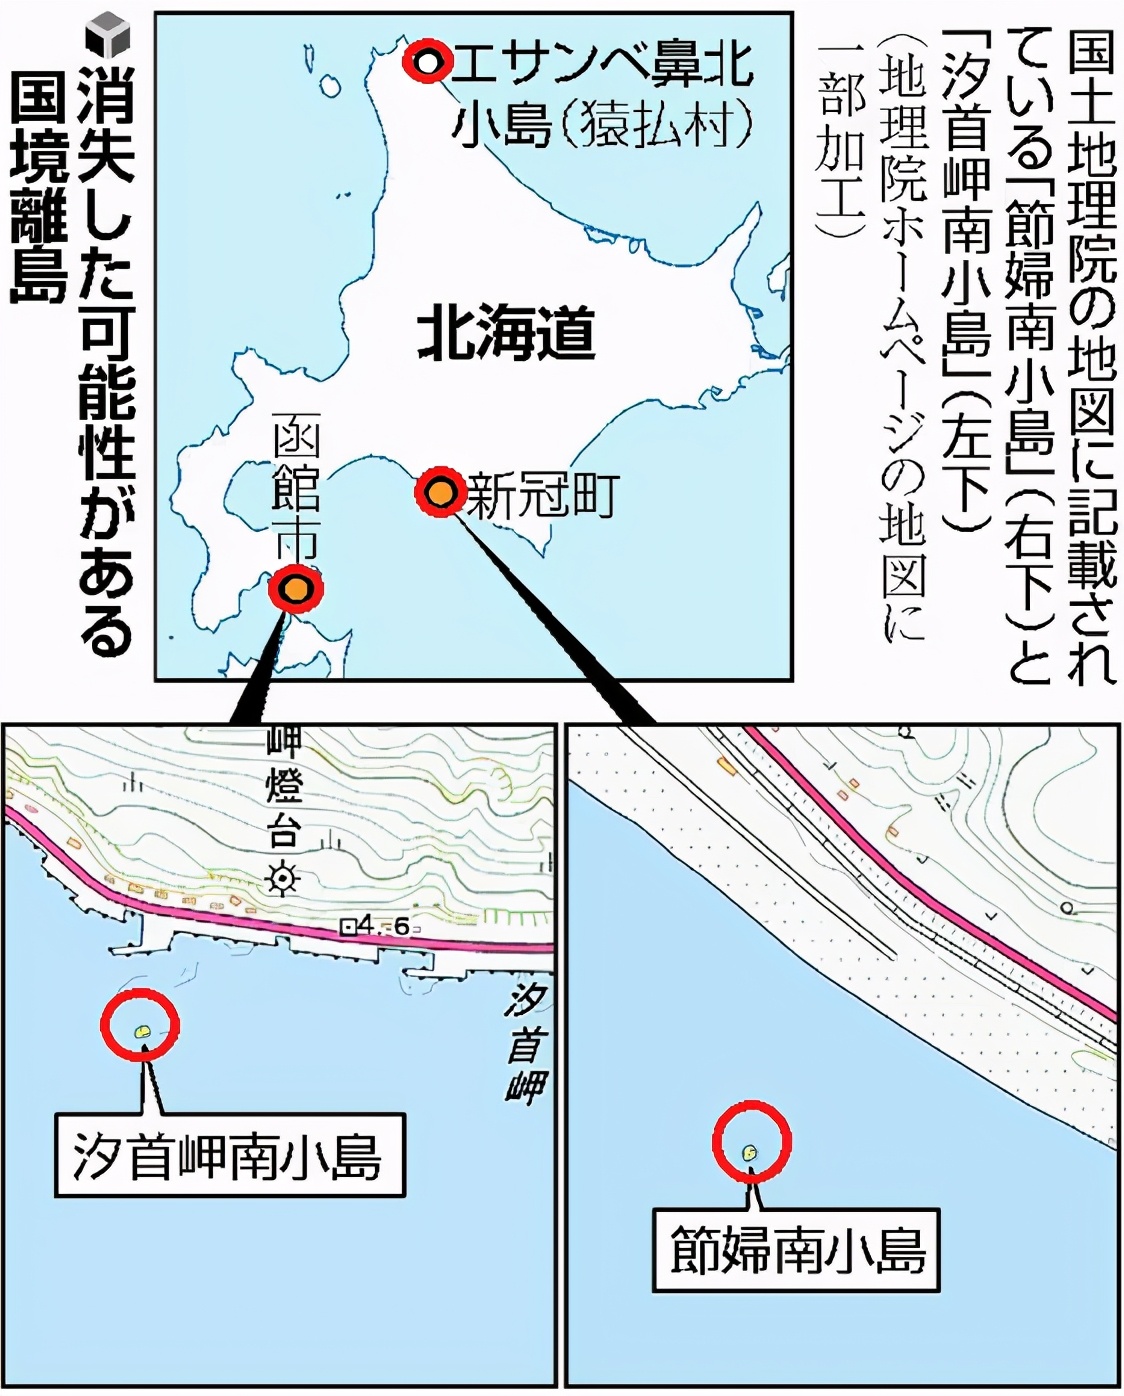 8座岛屿神秘消失，日本这次欲哭无泪，领海范围或将进一步缩小